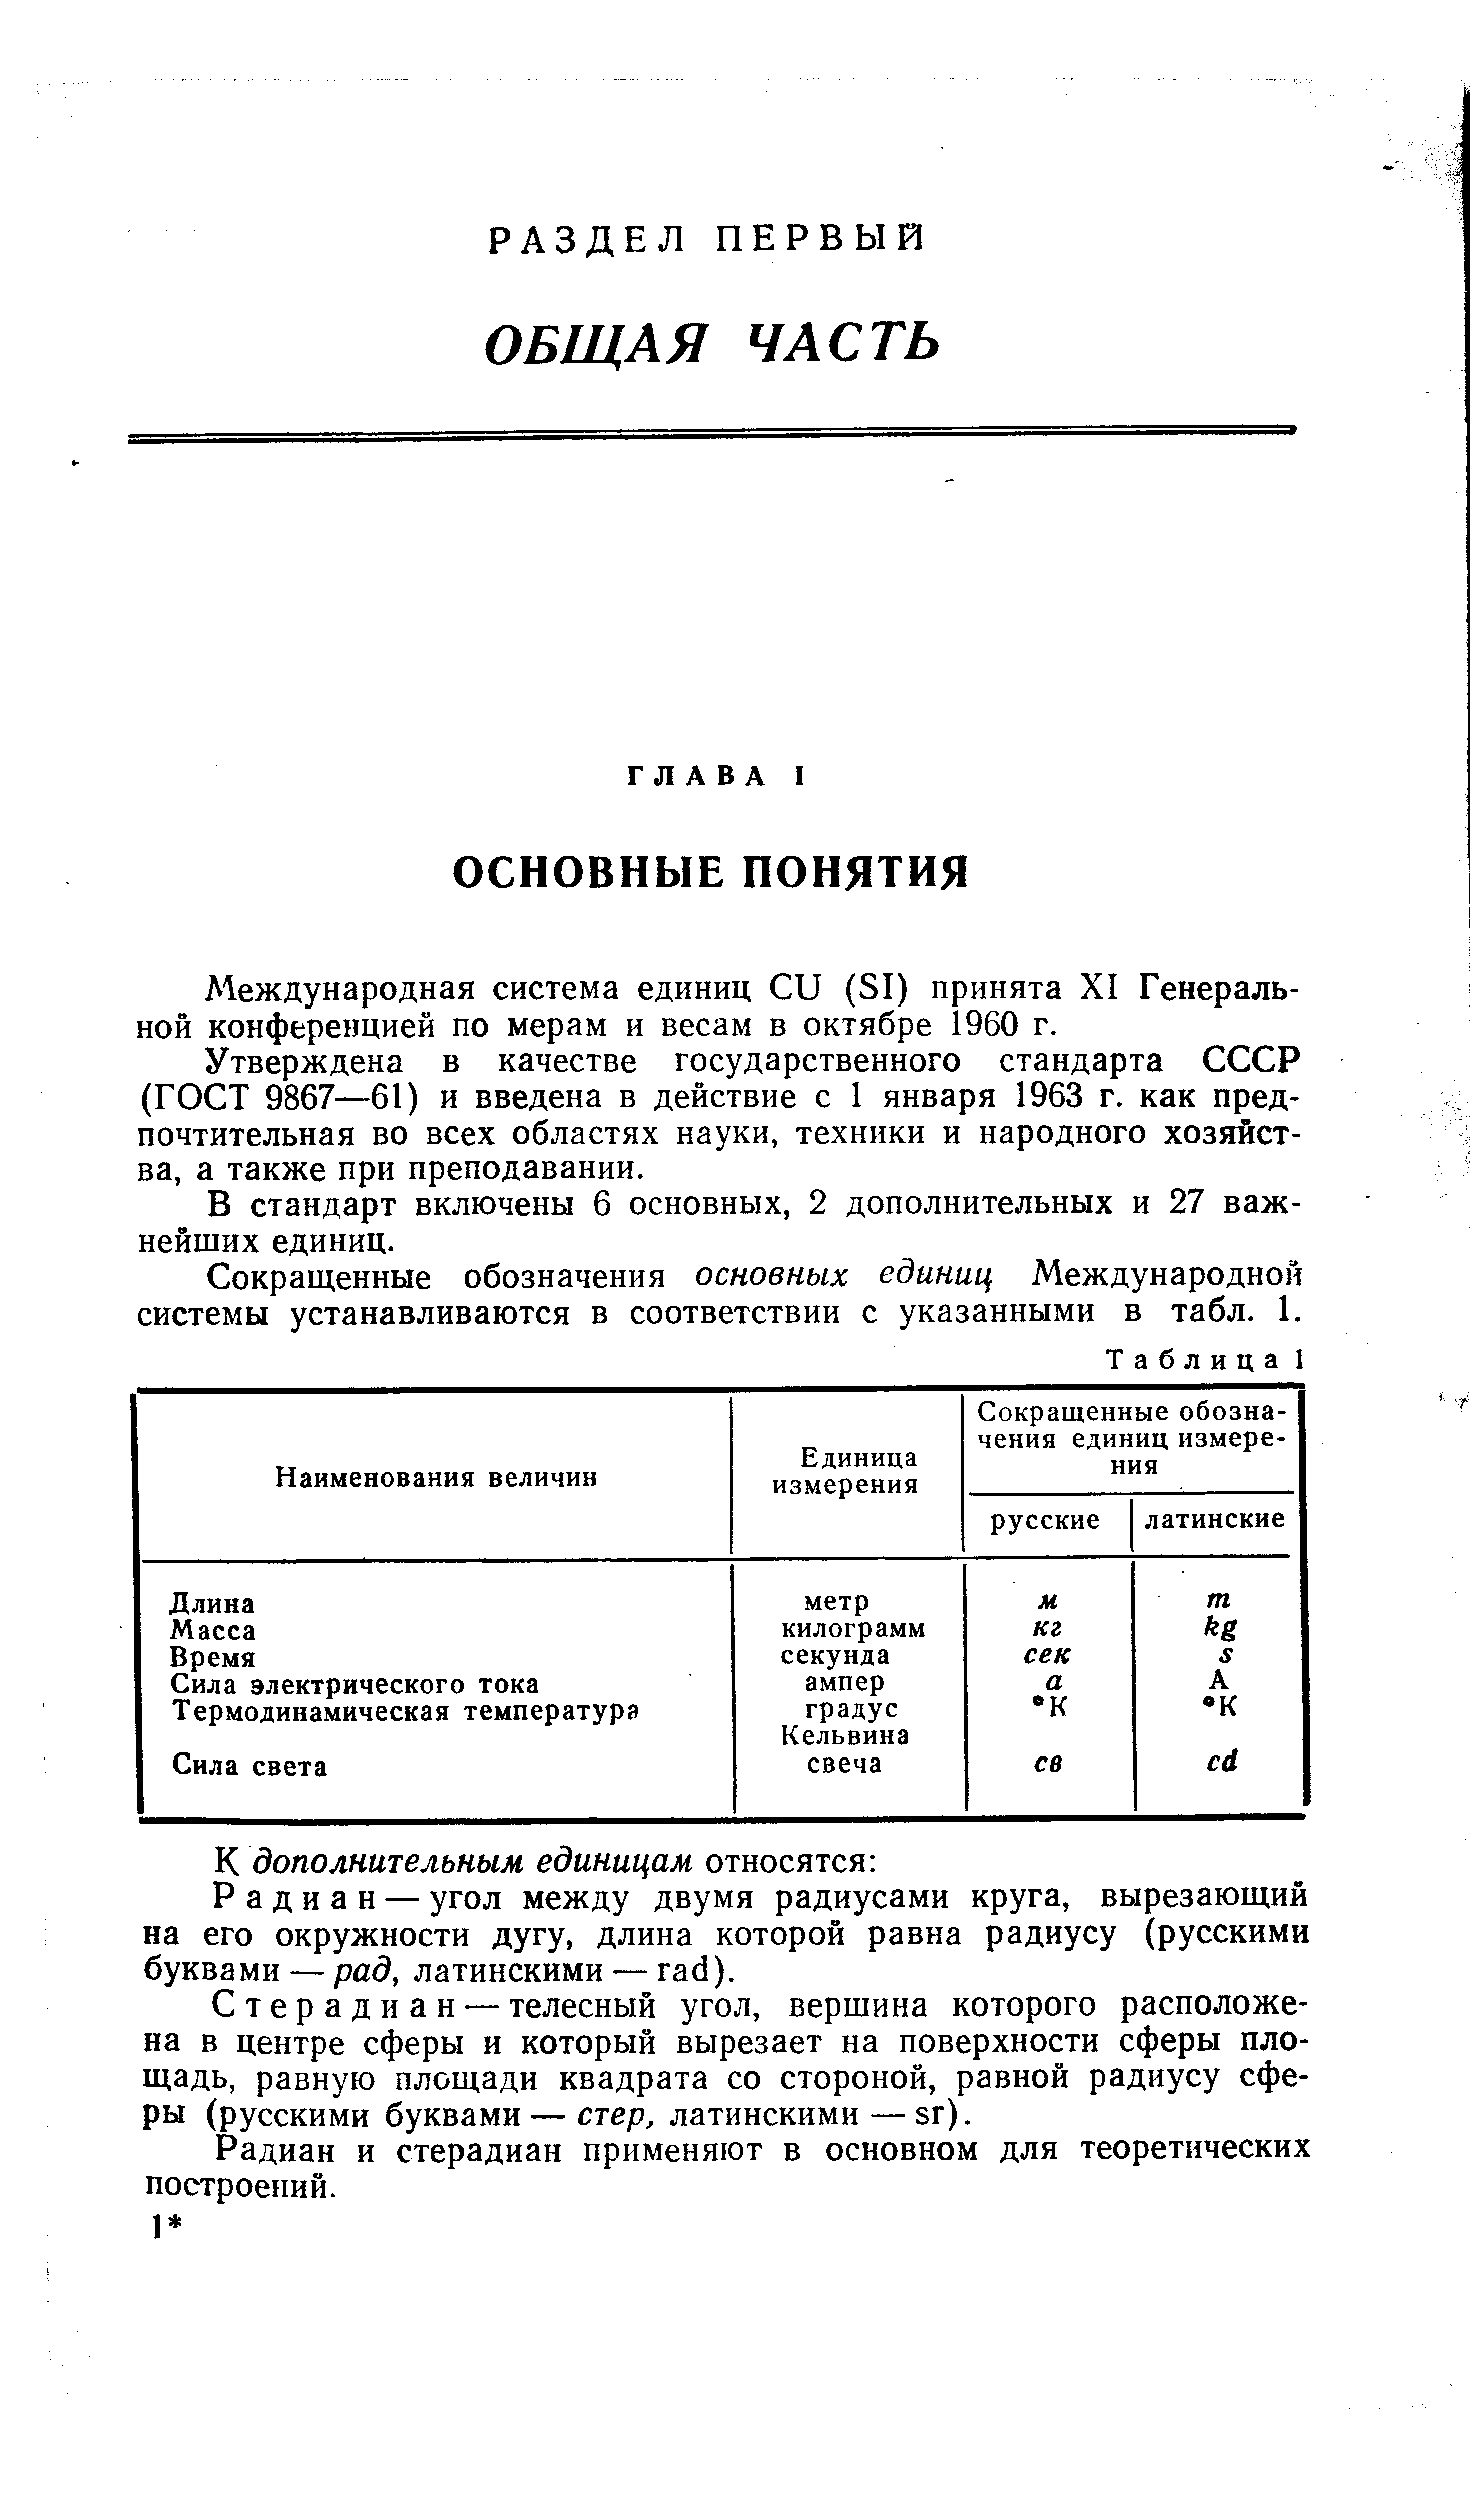 Международная система единиц Си (51) принята XI Генеральной конференцией по мерам и весам в октябре 1960 г.
